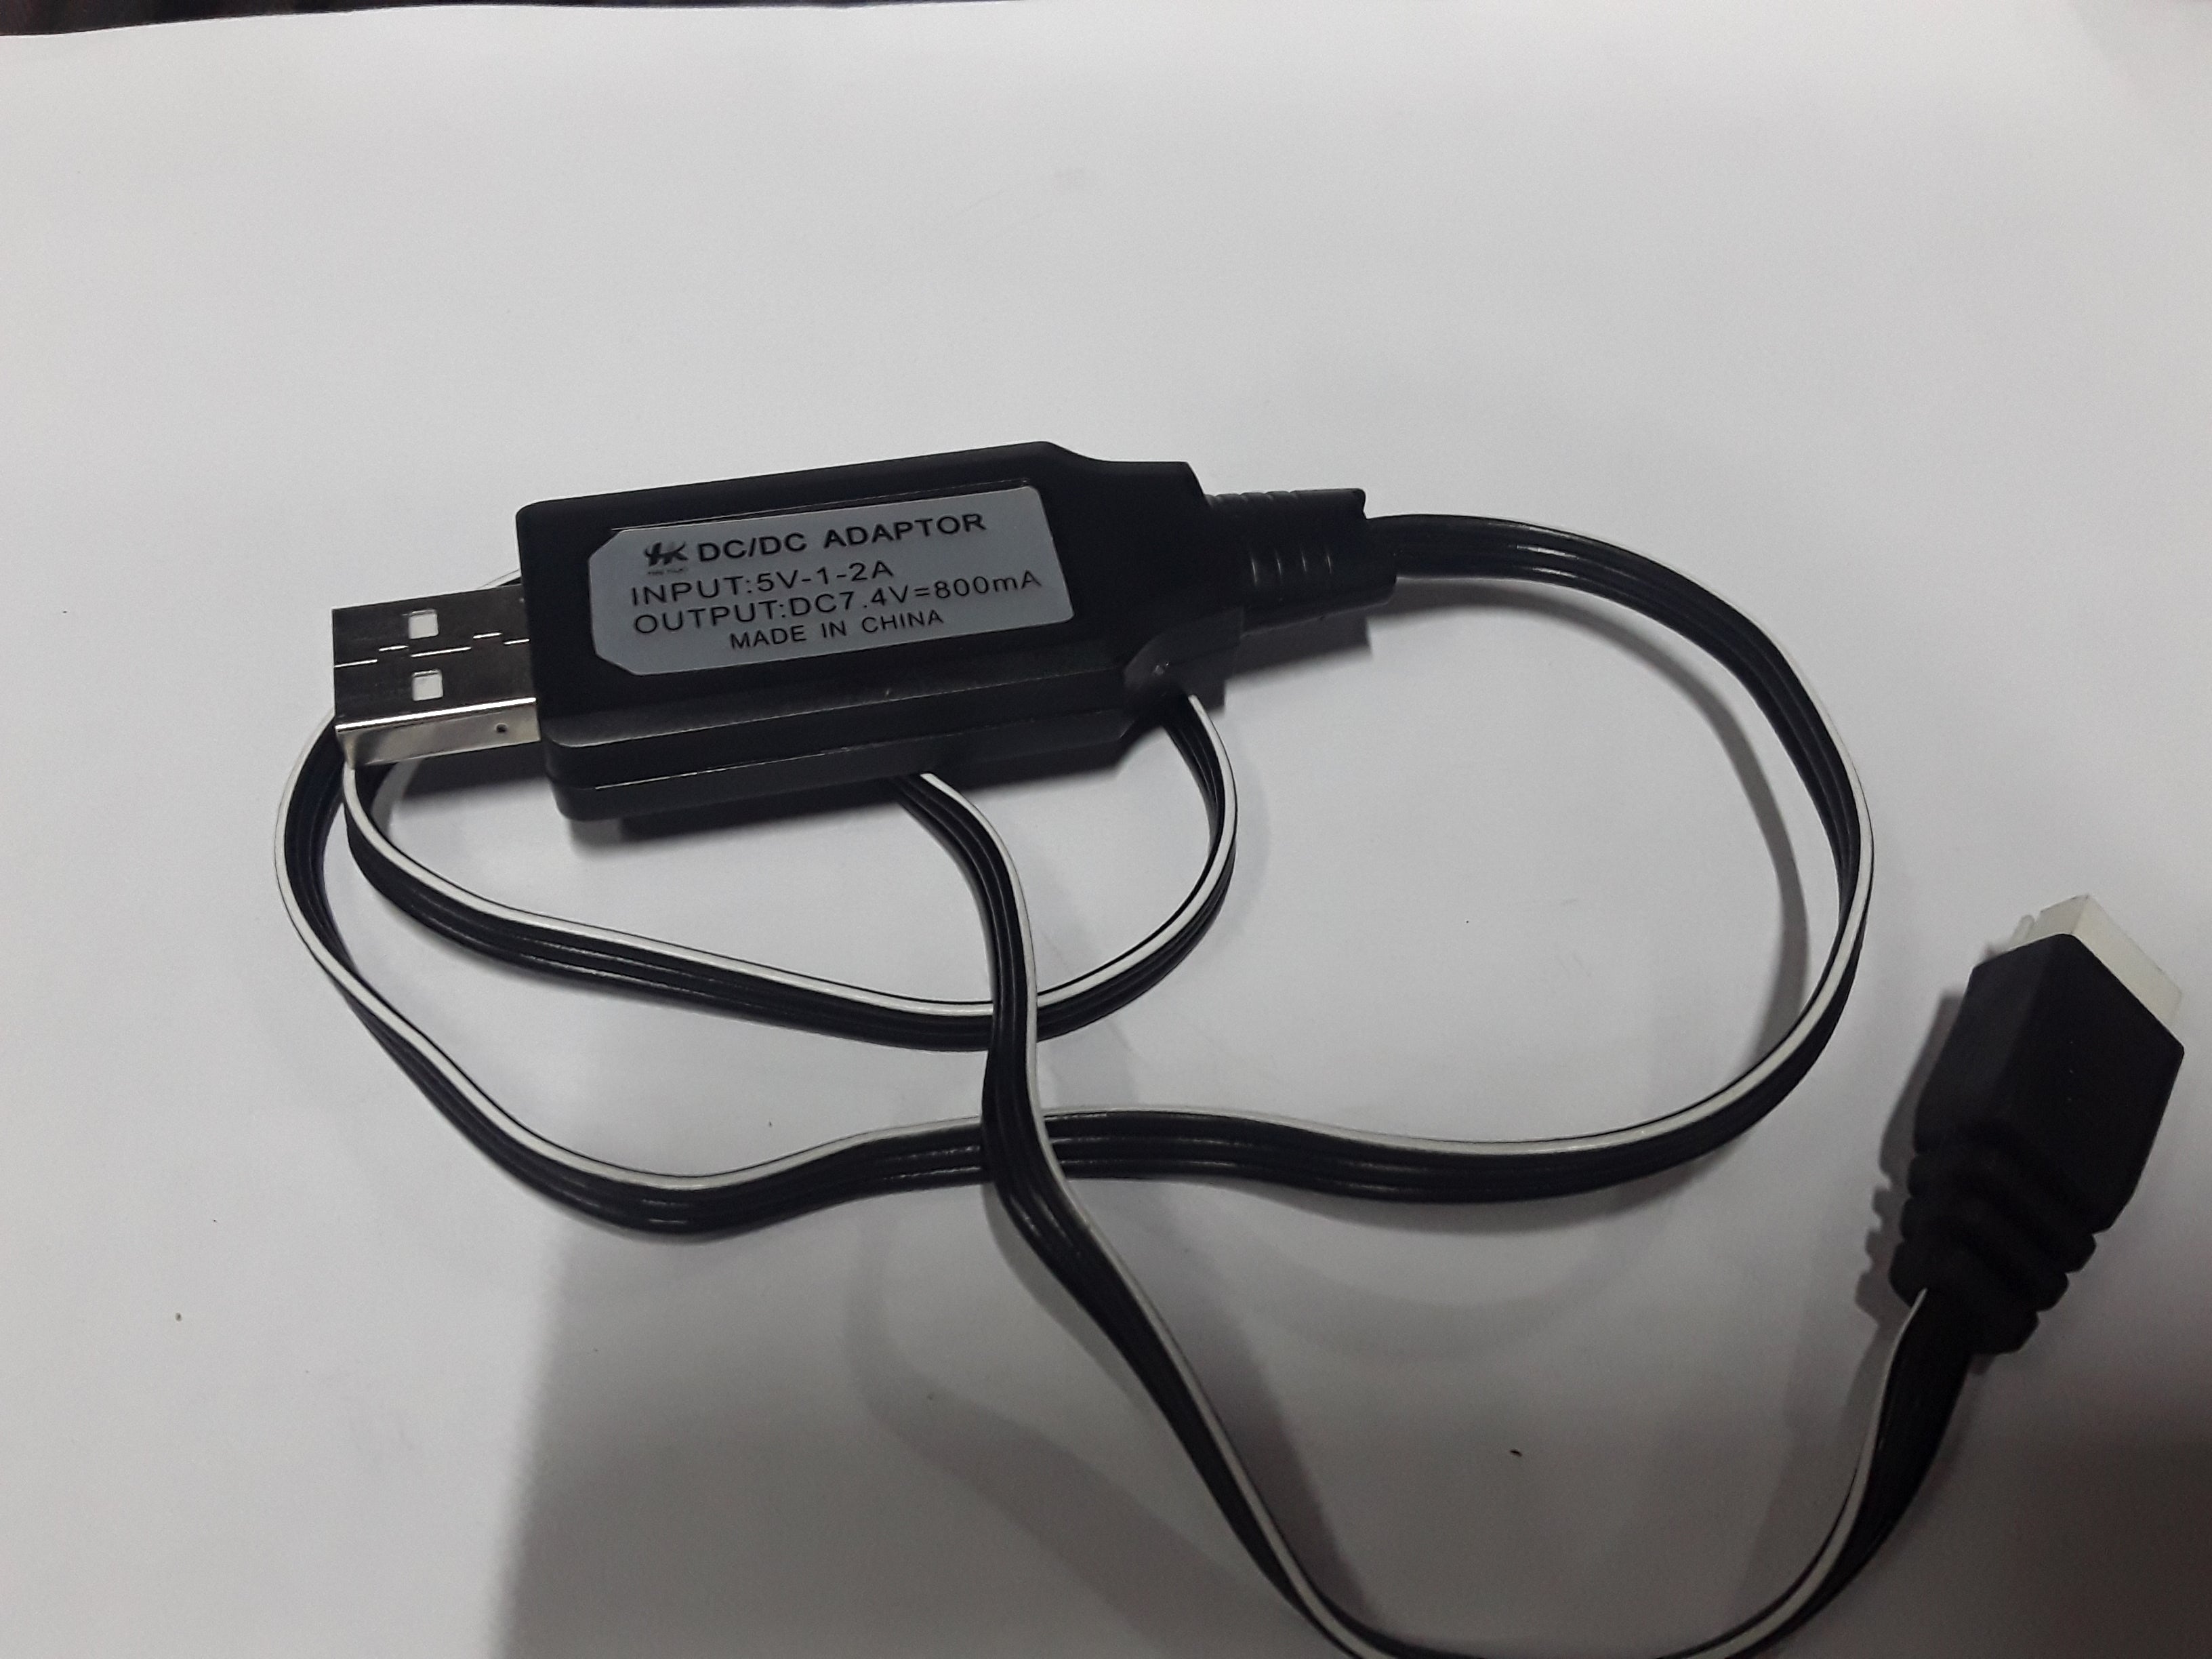 Usb Charger Dc/Dc Adapter Input 5V Dc7.4V